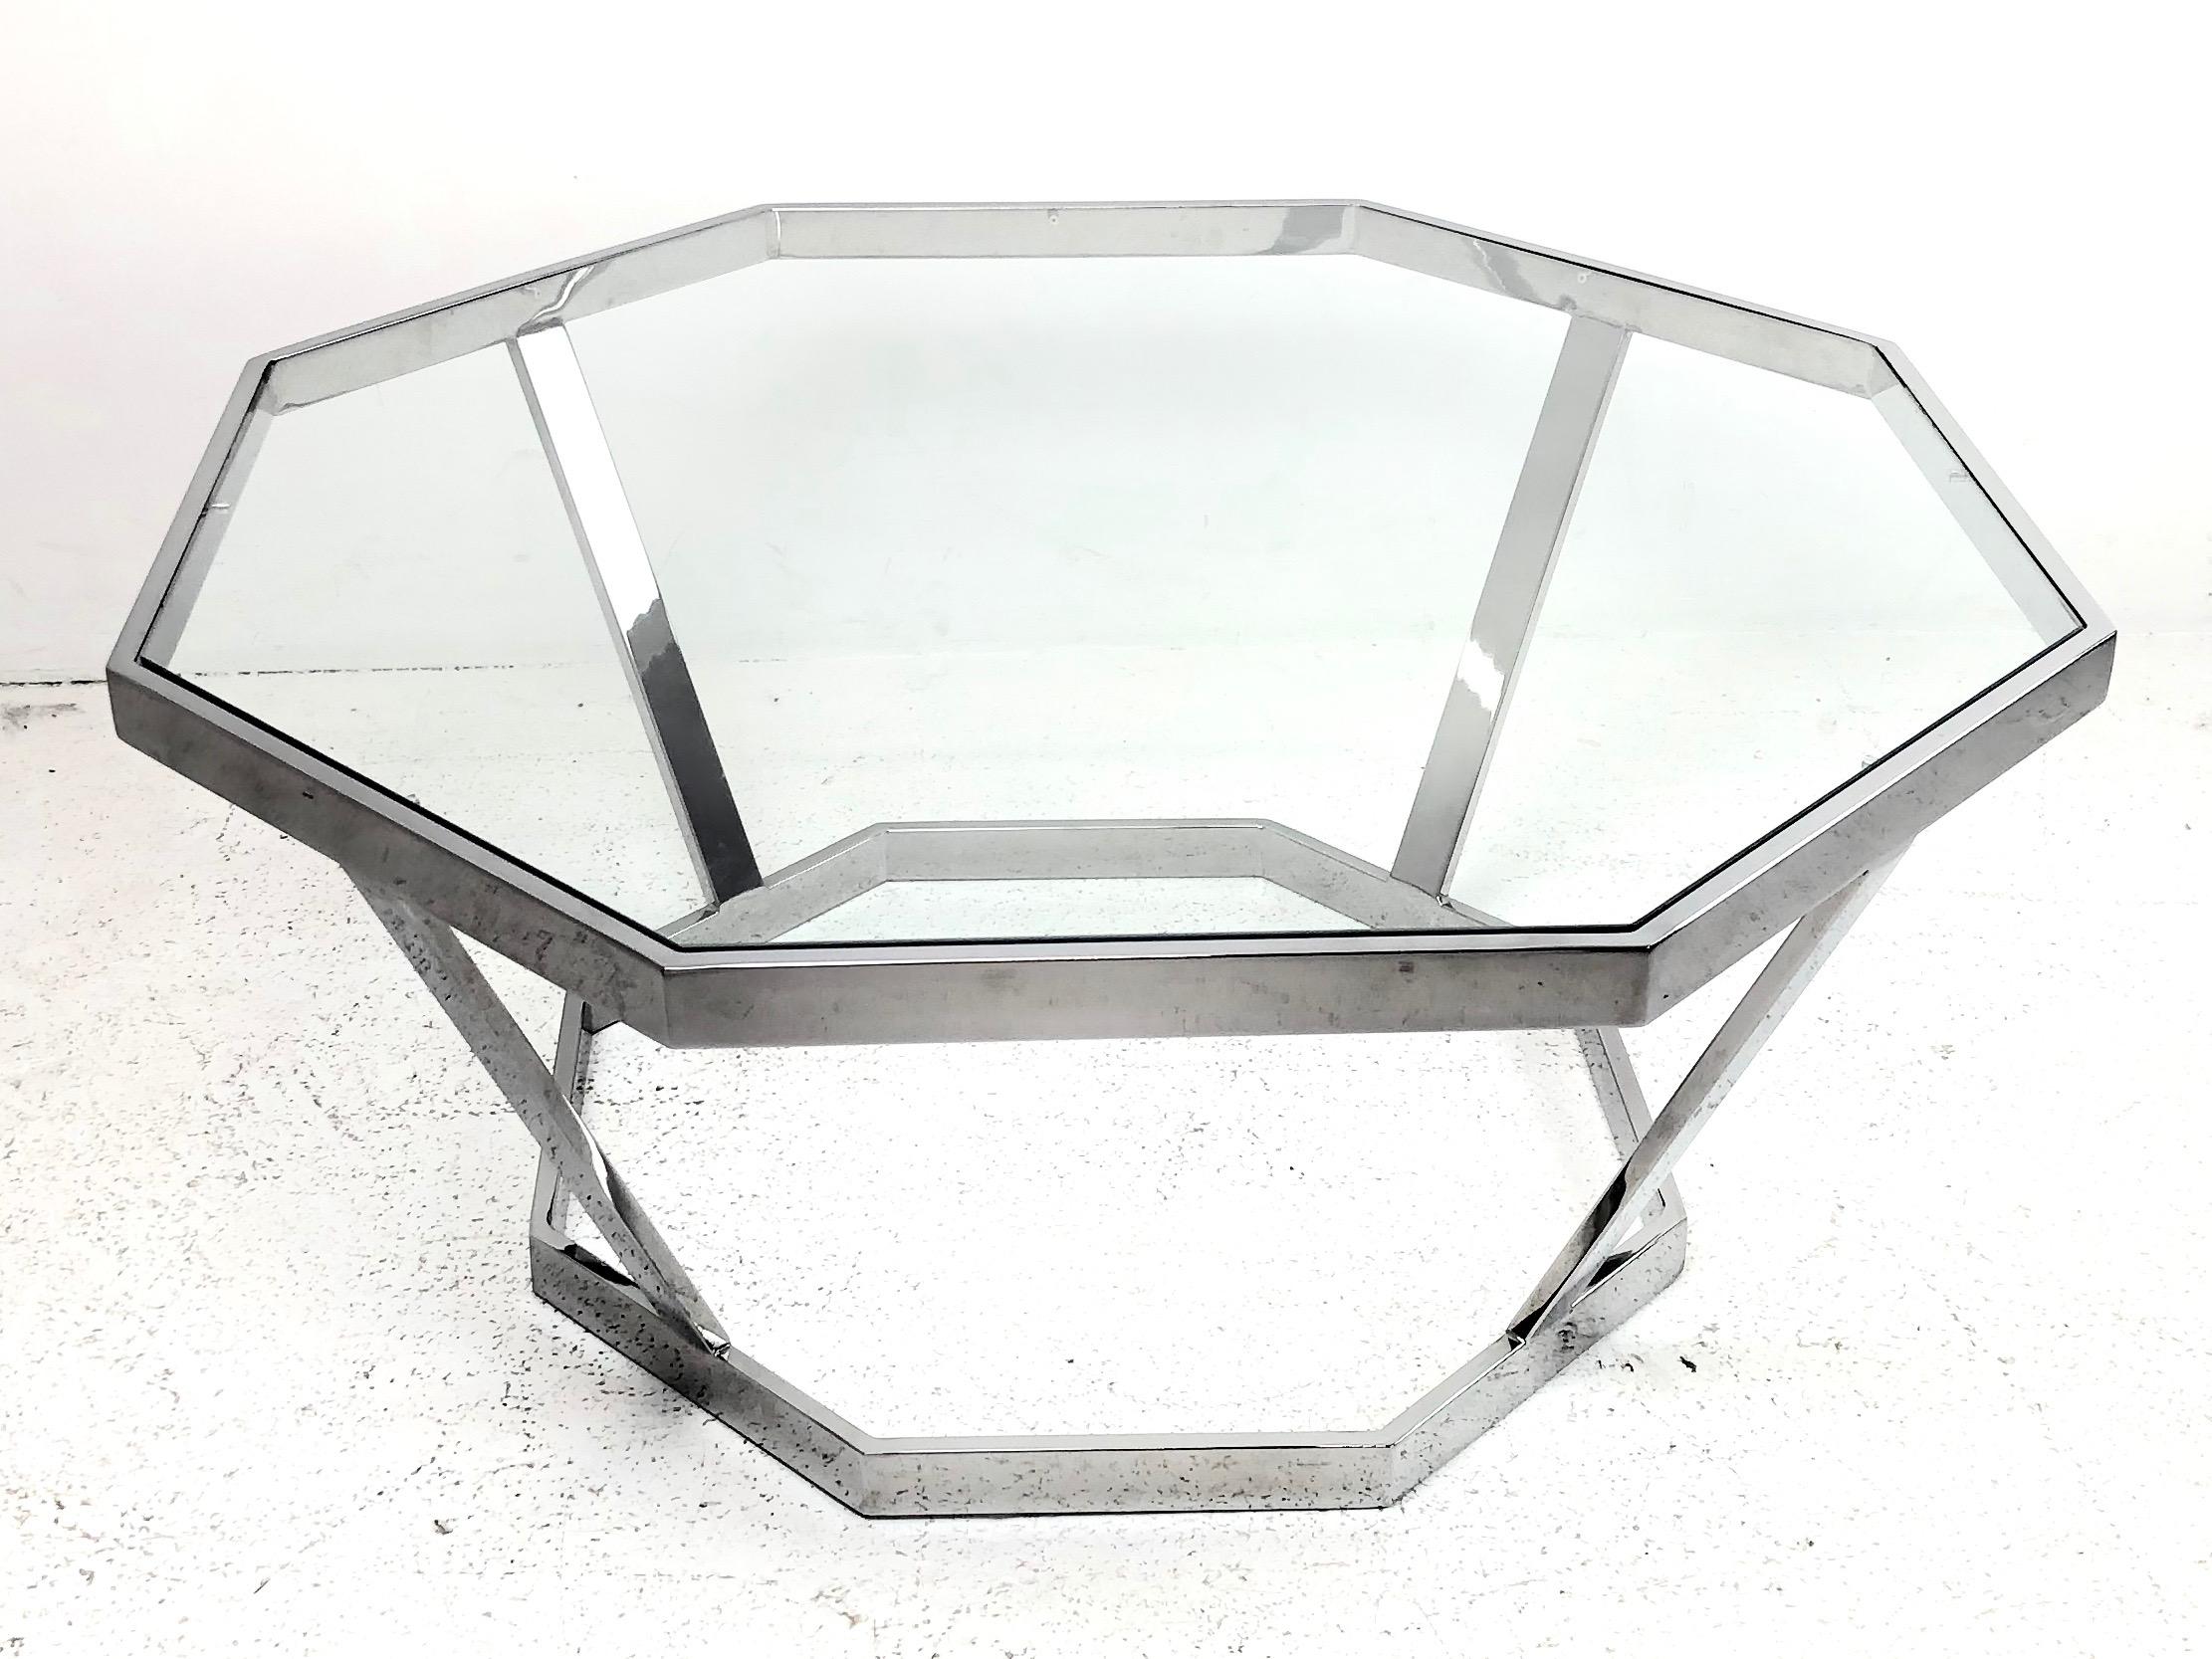 Table basse octogonale en chrome dans le style de Milo Baughman. La table basse est en bon état vintage avec l'usure de l'âge et de l'utilisation.

Dimensions :
36 de diamètre x 16.